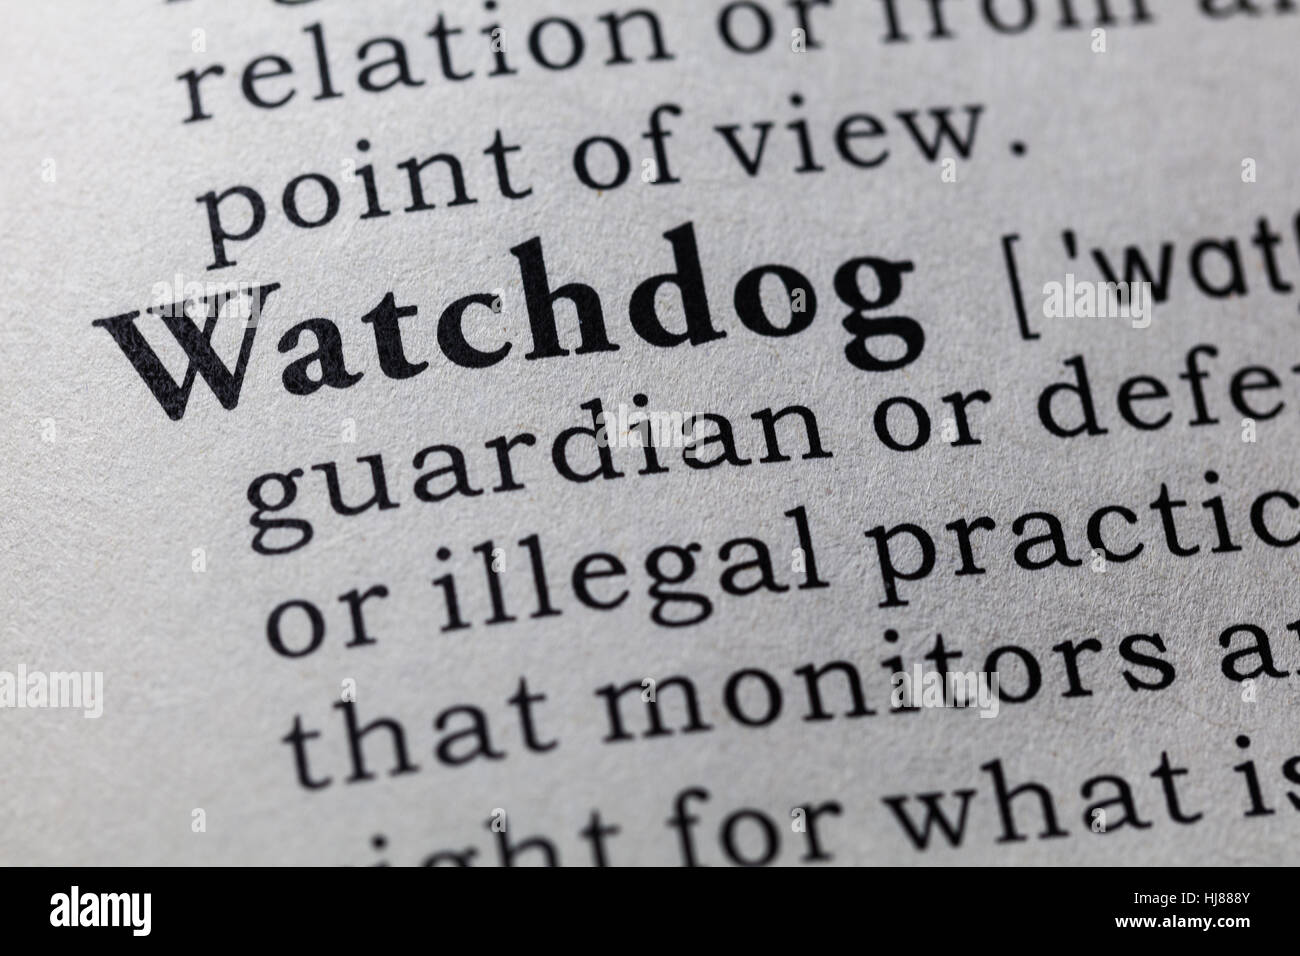 Gefälschte Wörterbuch, Wörterbuch-Definition des Wortes Watchdog. einschließlich der wichtigsten beschreibende Wörter. Stockfoto